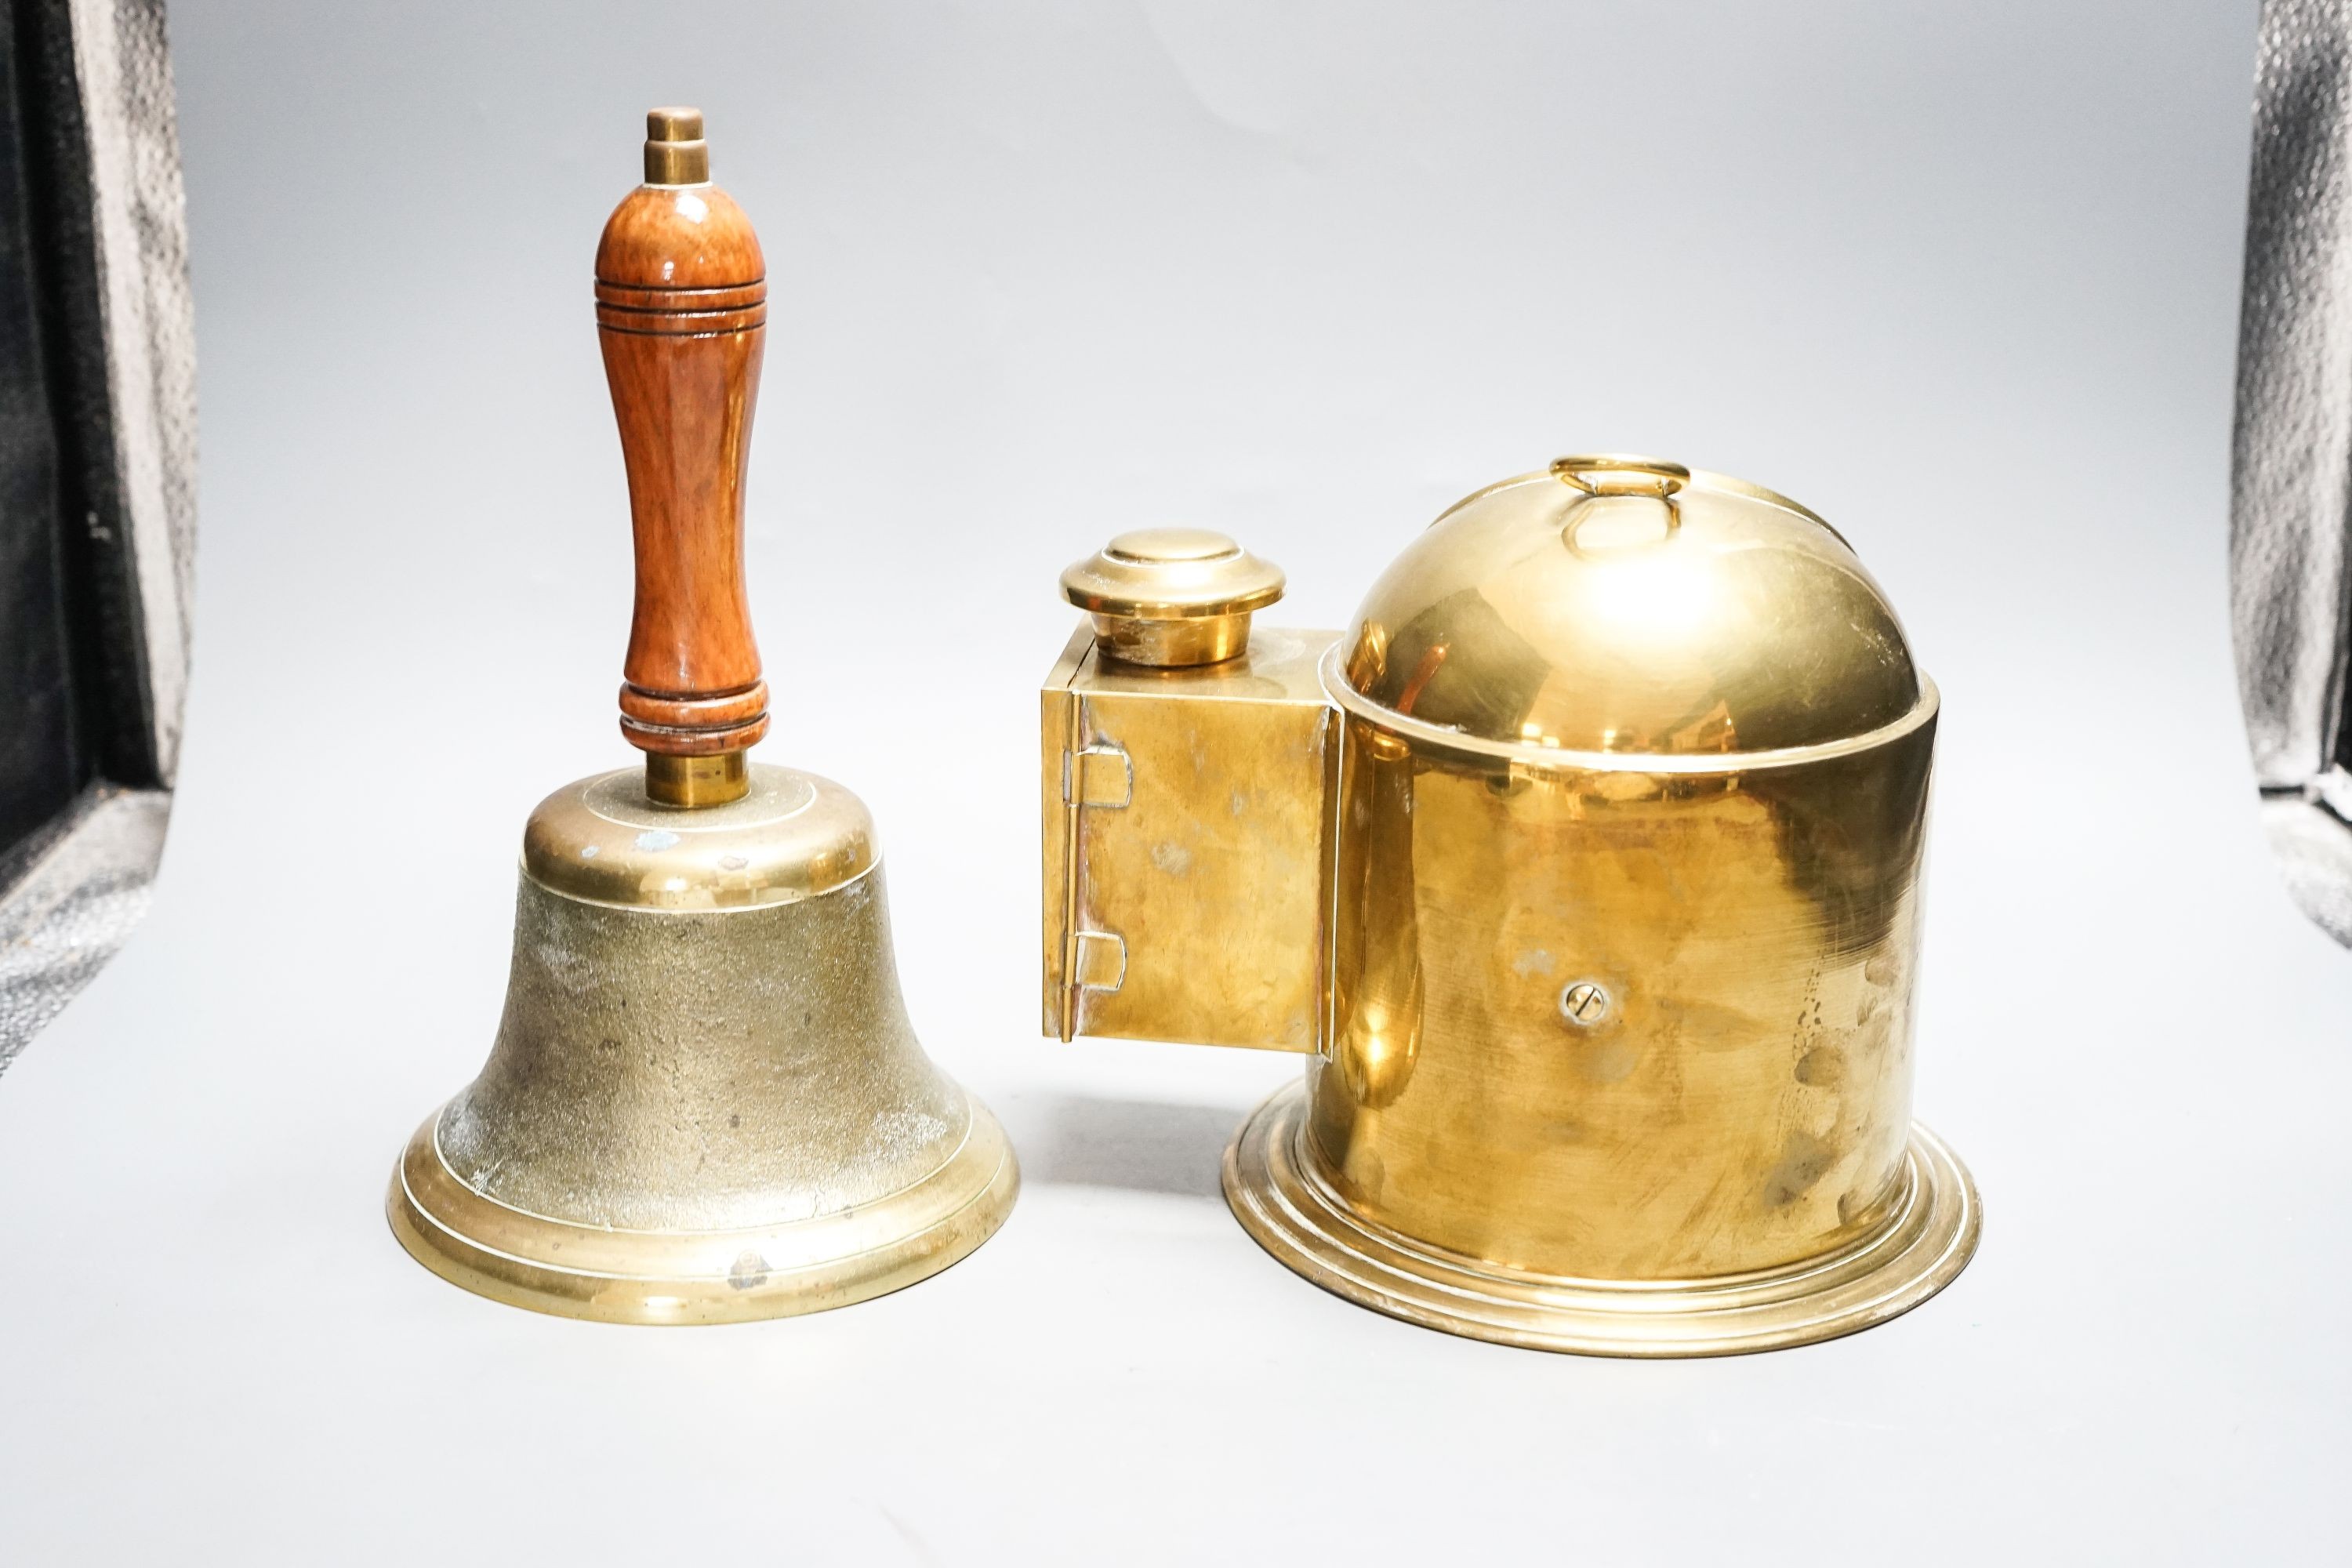 A brass ships binnacle compass and a handbell